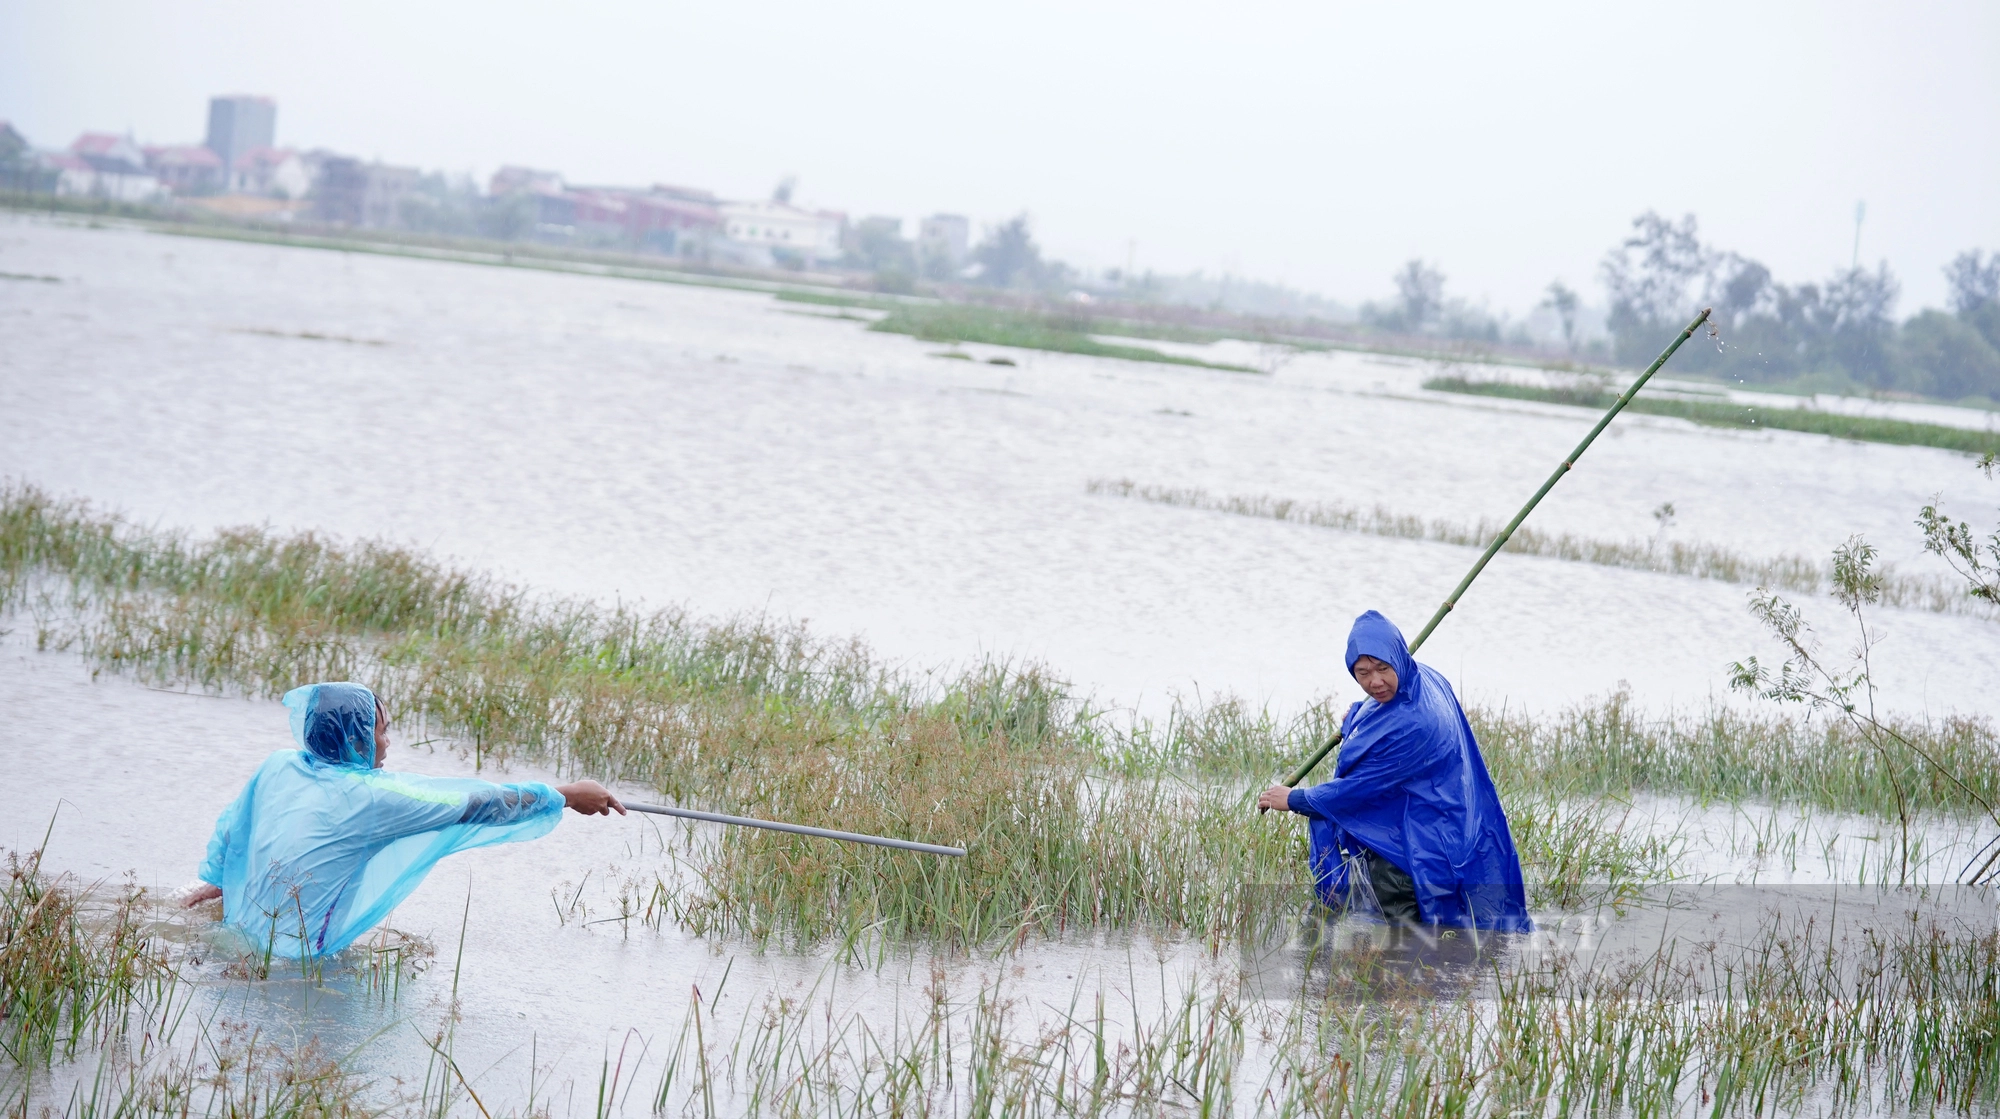 Cả làng ở Hà Tĩnh “đội mưa” cùng nhau lội nước đi bắt chuột bảo vệ mùa màng - Ảnh 6.